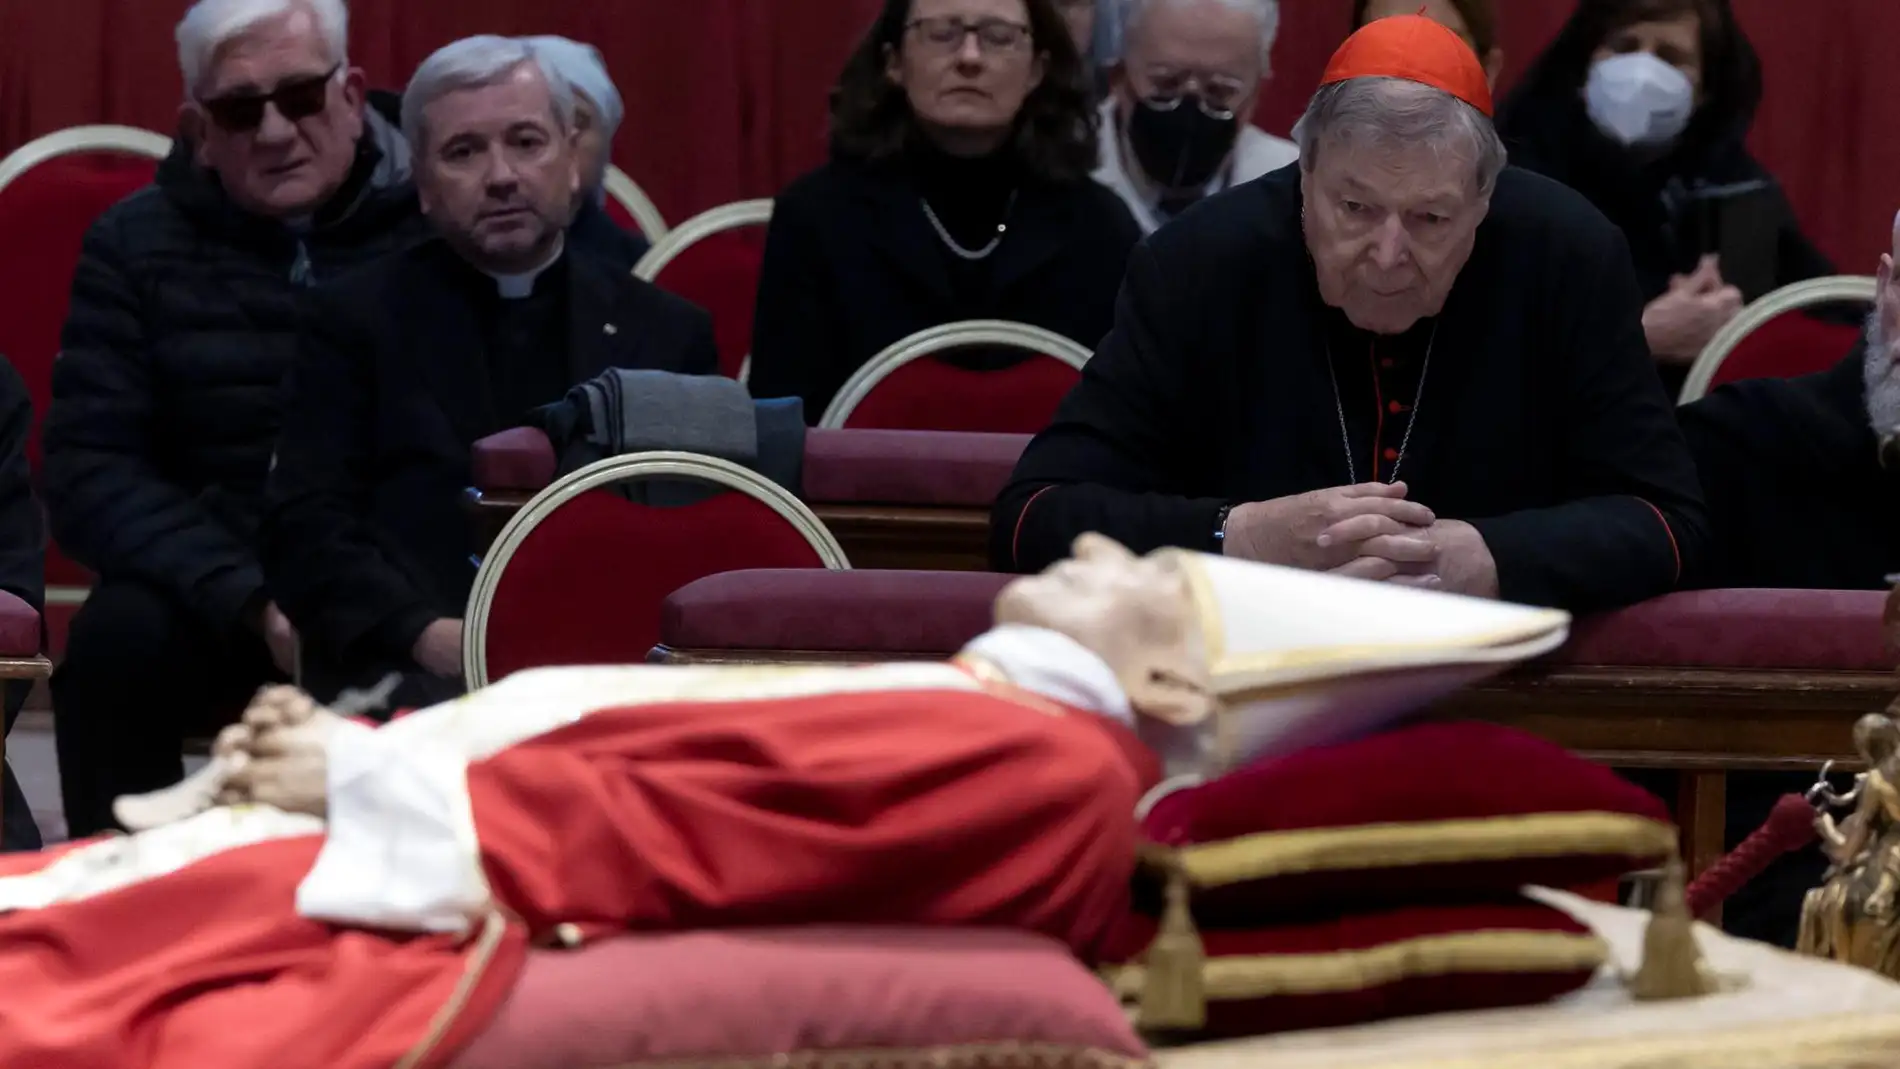 Ultima día de la capilla ardiente de Ratzinger mientras se prepara el funeral